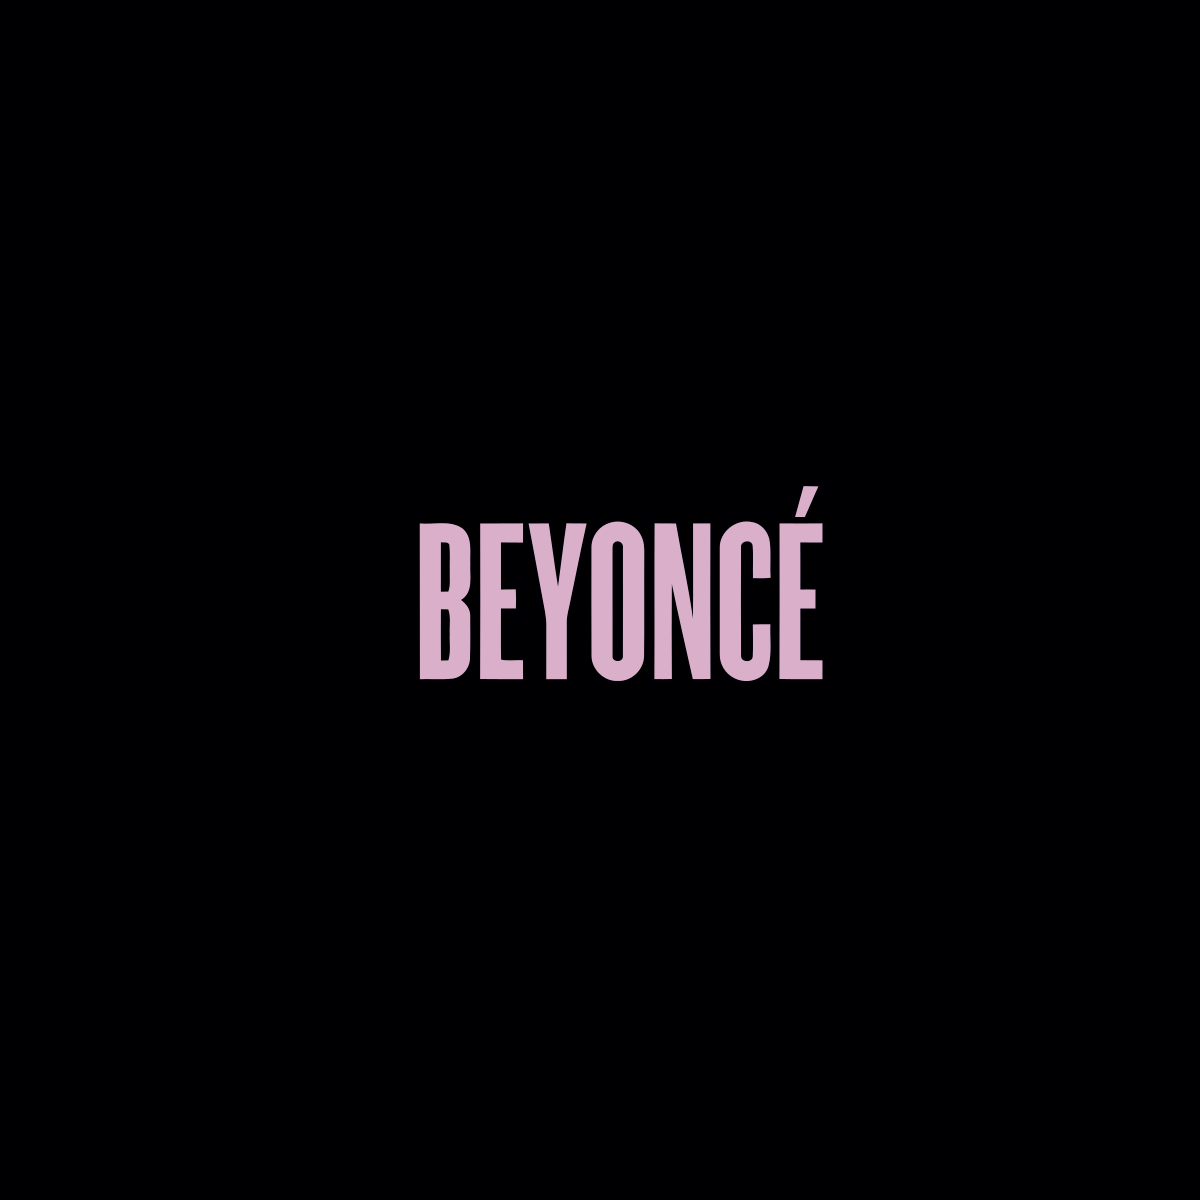 beyonce%CC%81 album beyonce%CC%81 - Beyoncé: Nữ hoàng của làng nhạc đương đại thế giới